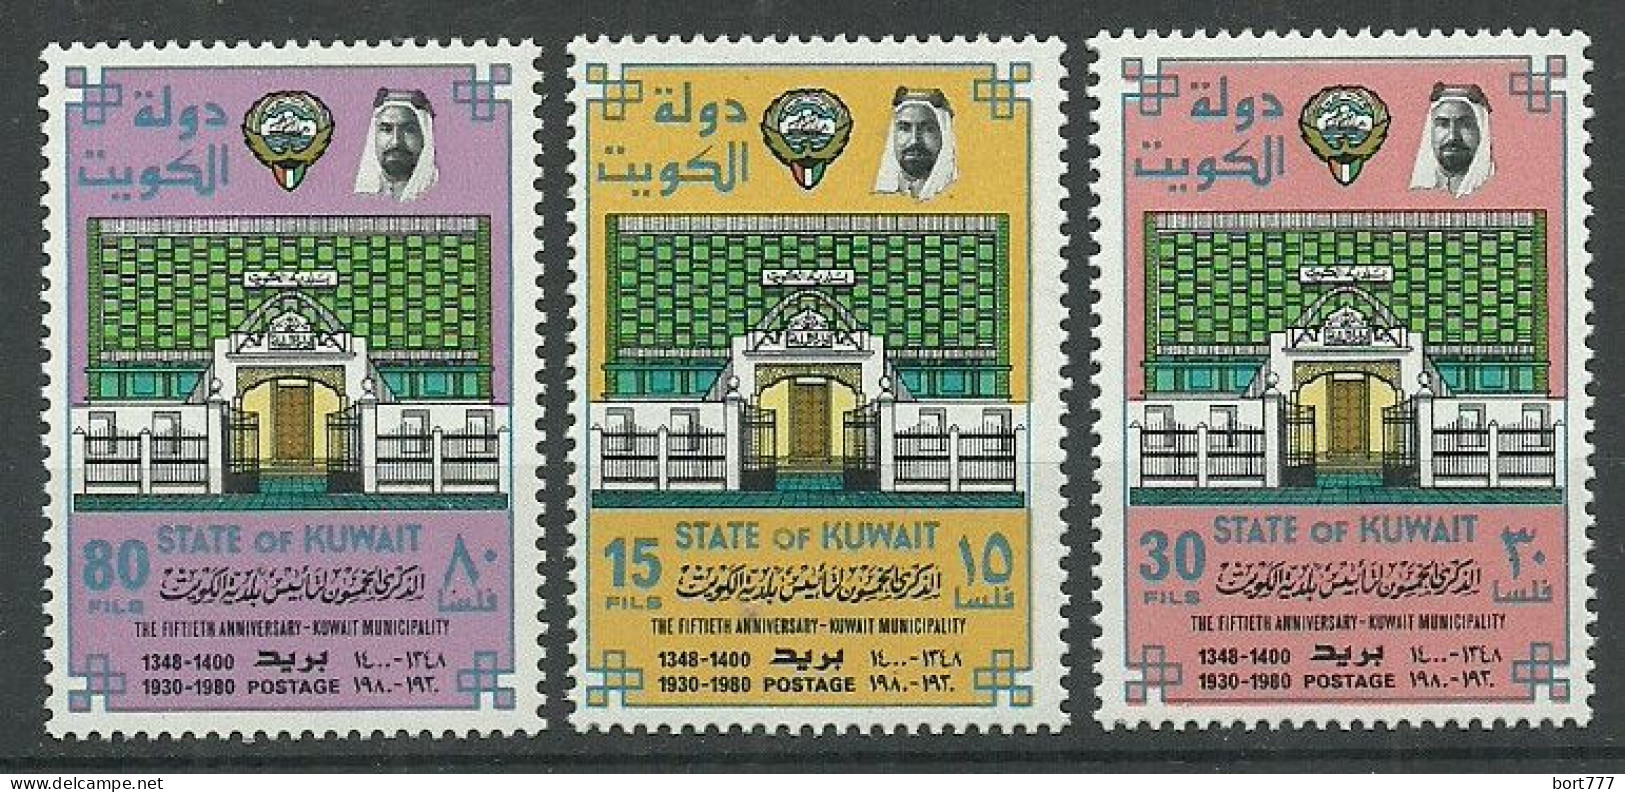 Kuwait 1980 Year, Mint Stamps MNH (** )  Mi # 855-57 - Kuwait